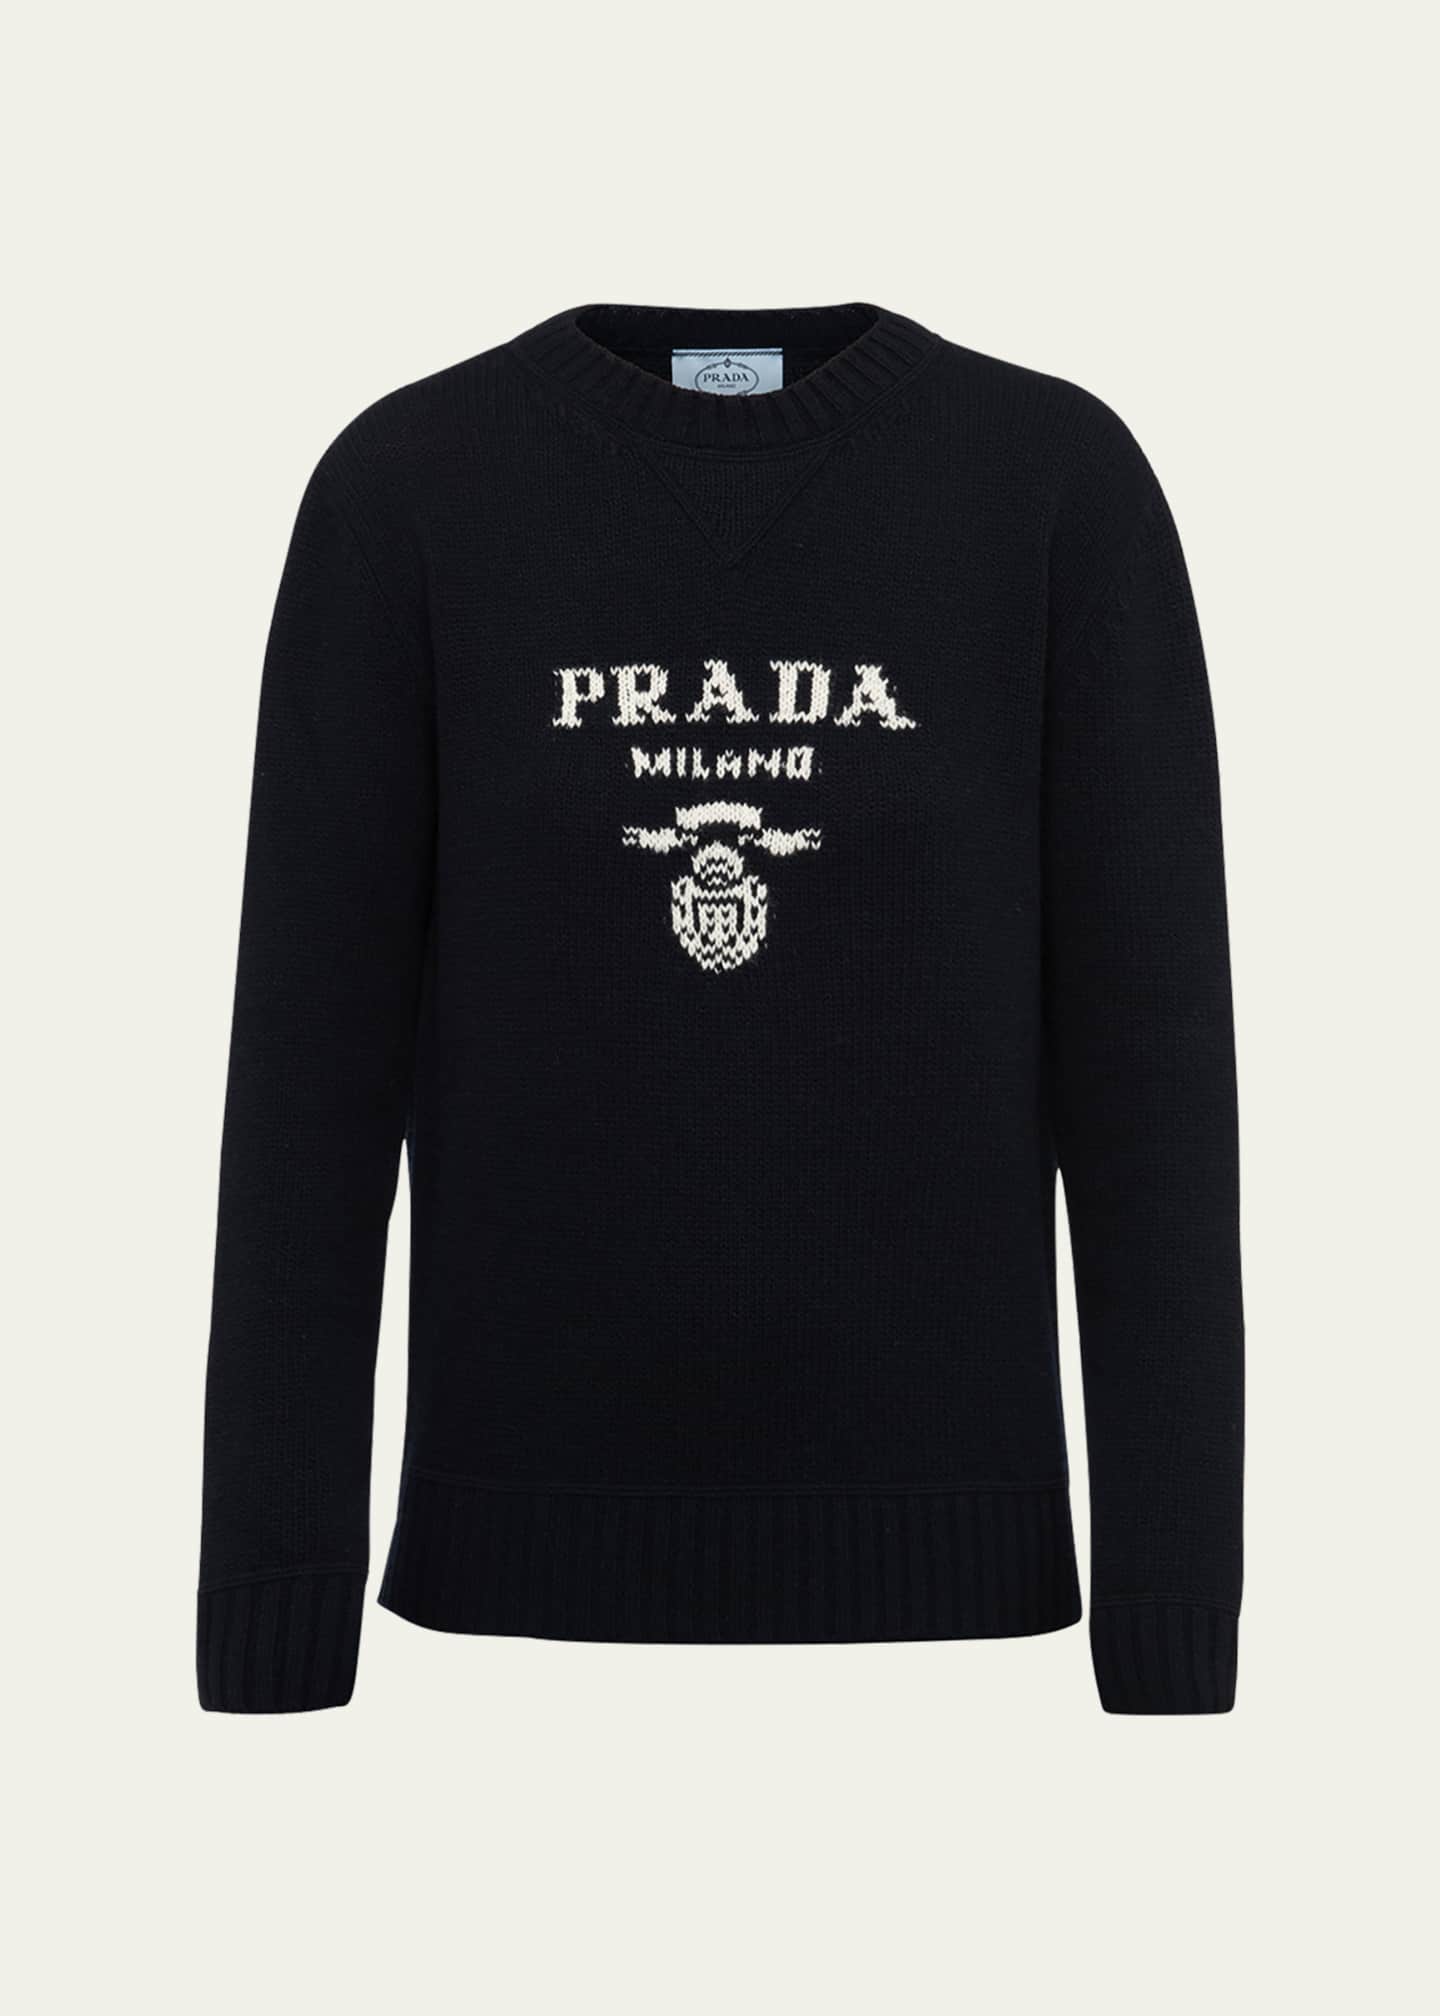 special! PRADA 15ss cashmere sweaterspecial